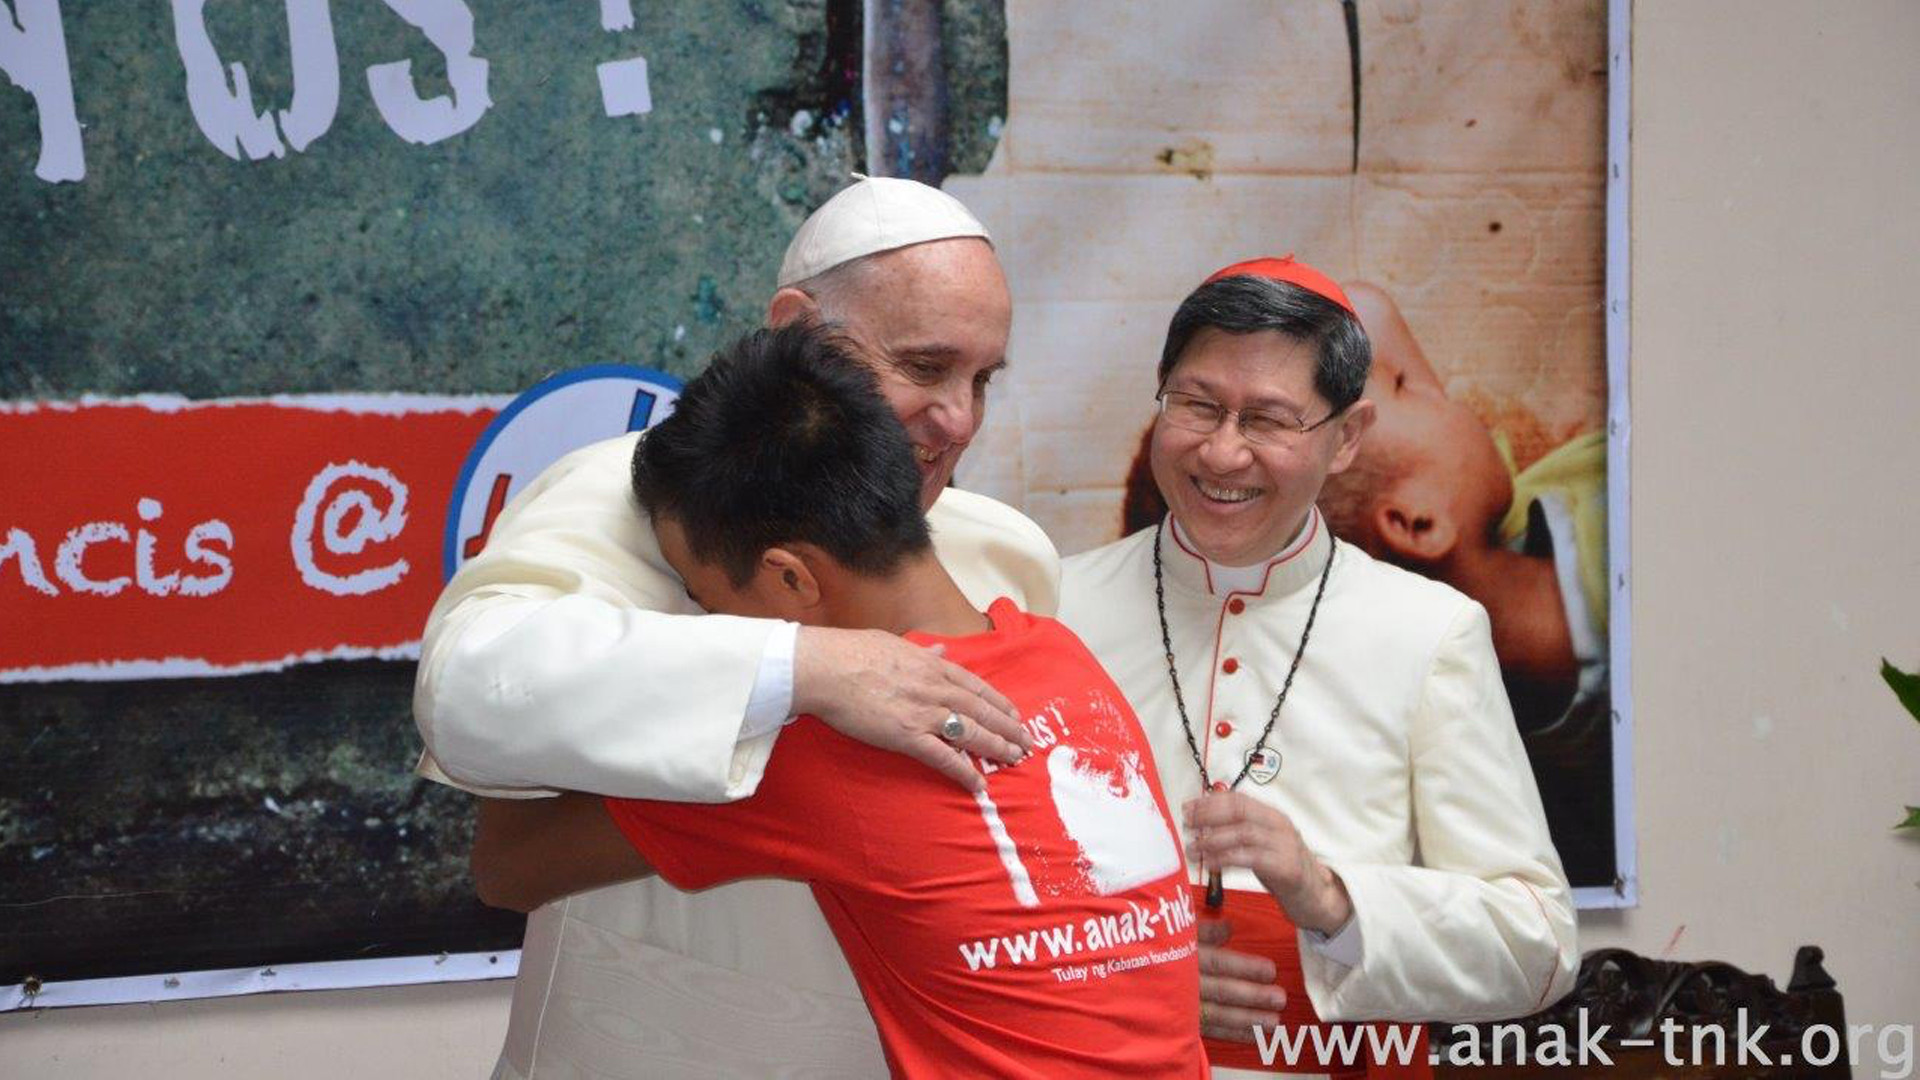 Le pape François a exaucé le voeu du Père Dauchez (Photo: Fondation Anak-Tnk)